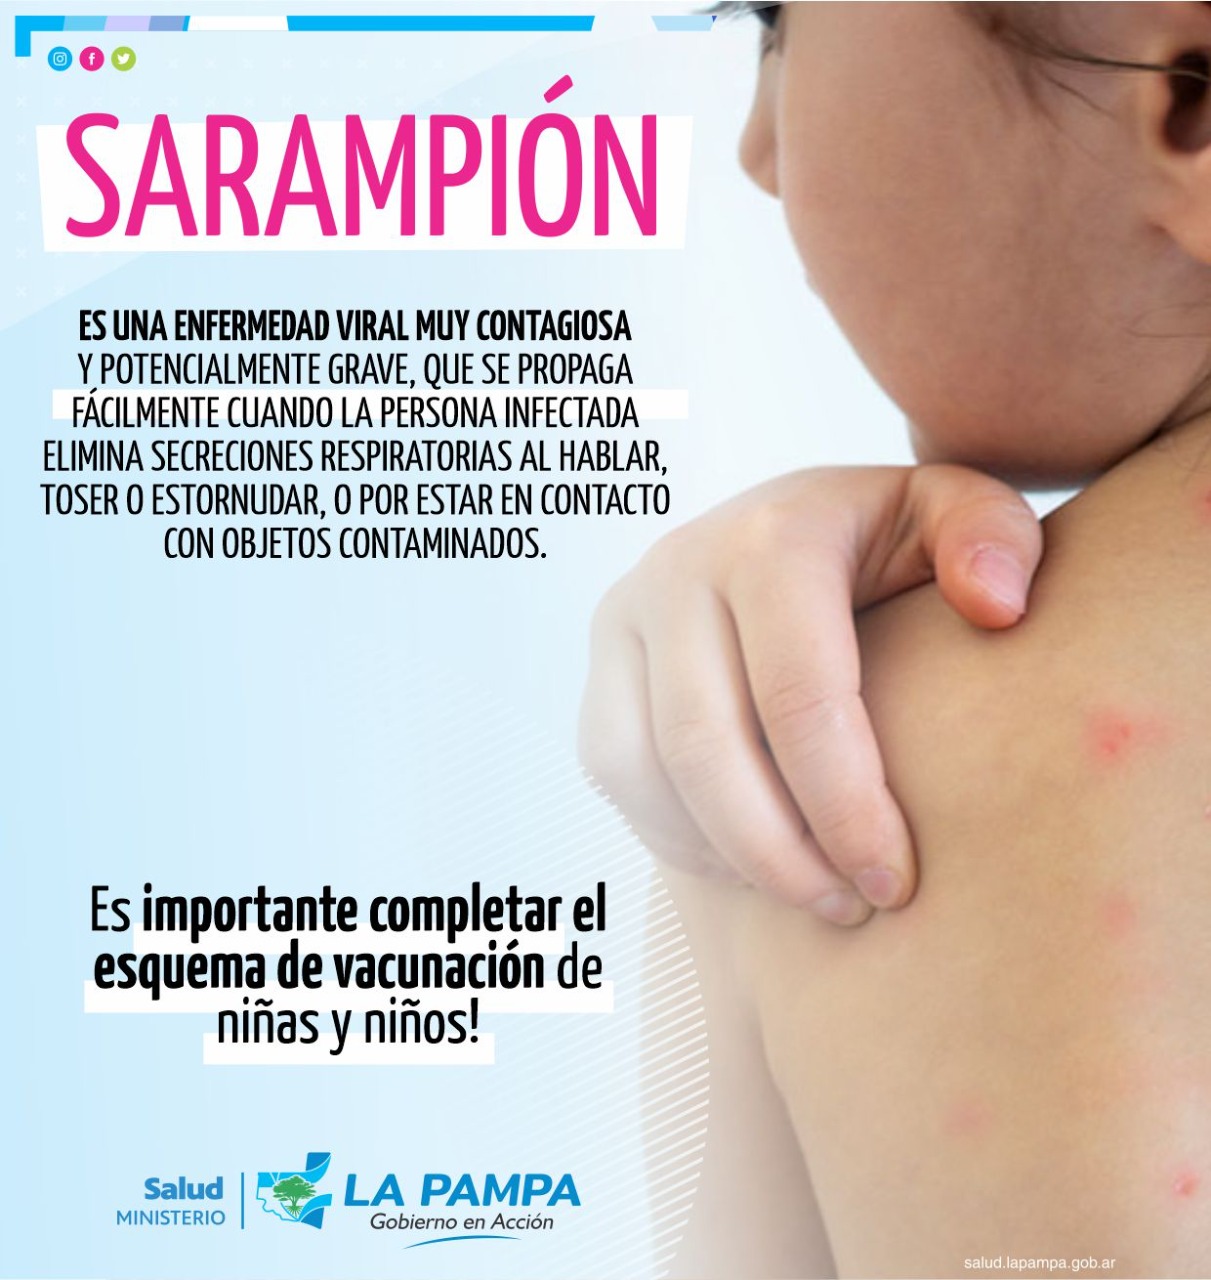 Nación confirma un caso de sarampión: se reafirma la importancia de completar los calendarios de vacunación  